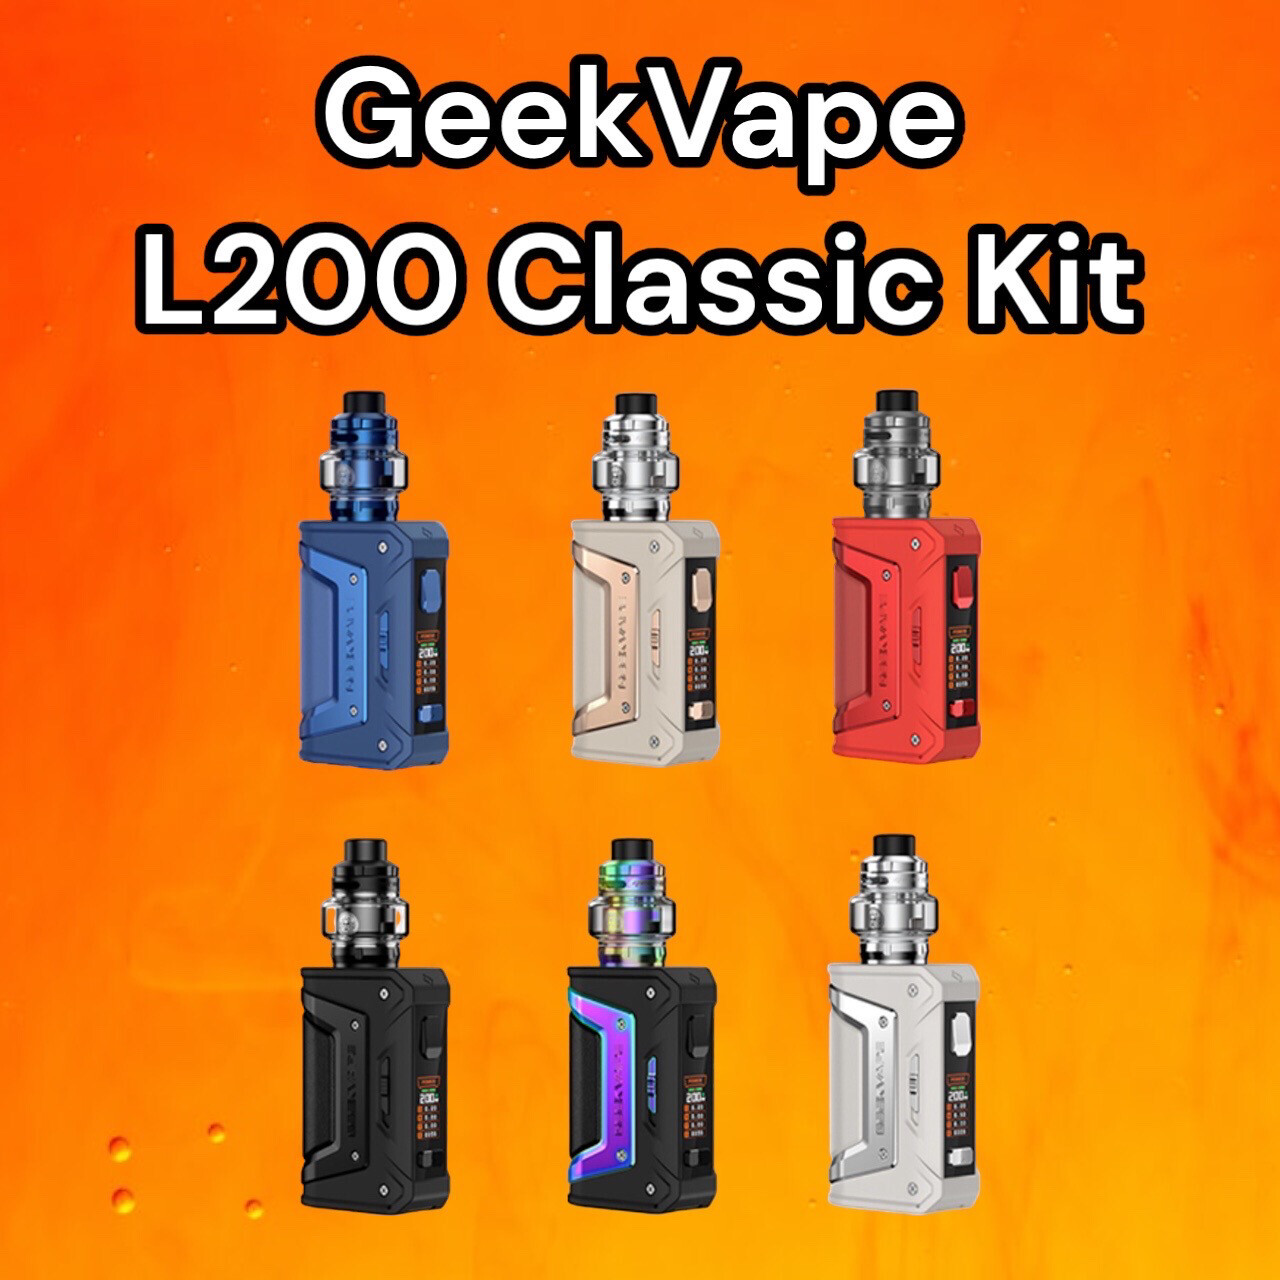 Geekvape L200 Classic Kit